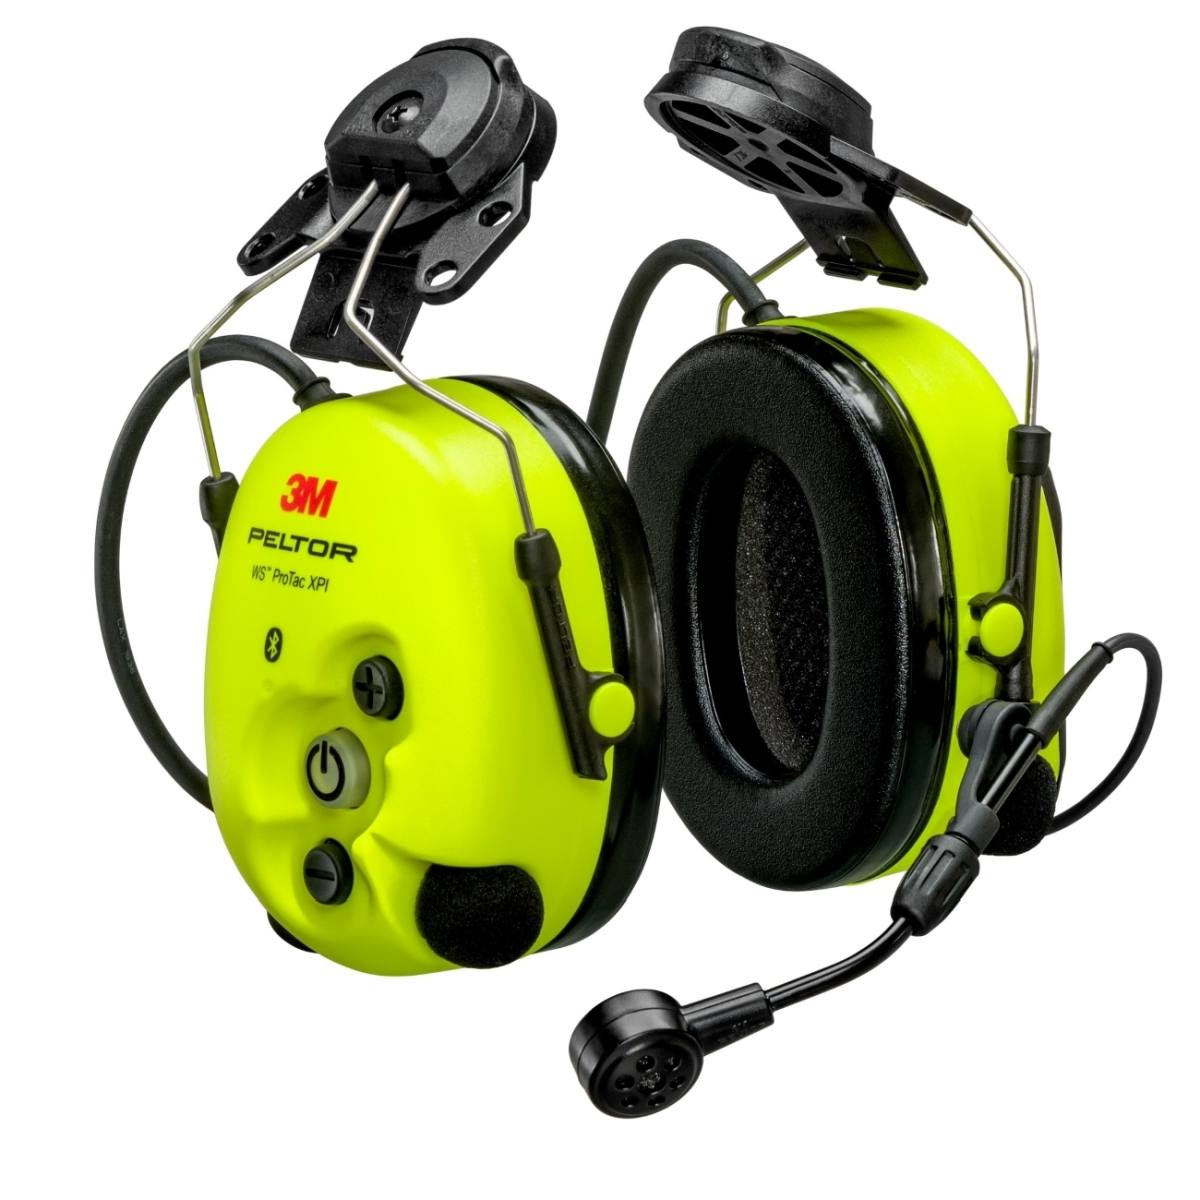 3M Peltor WS ProTac XPI auricular de protección auditiva toma FLX2 para conectar dispositivos externos, fijación al casco, Bluetooth, amarillo, MT15H7P3EWS6-111